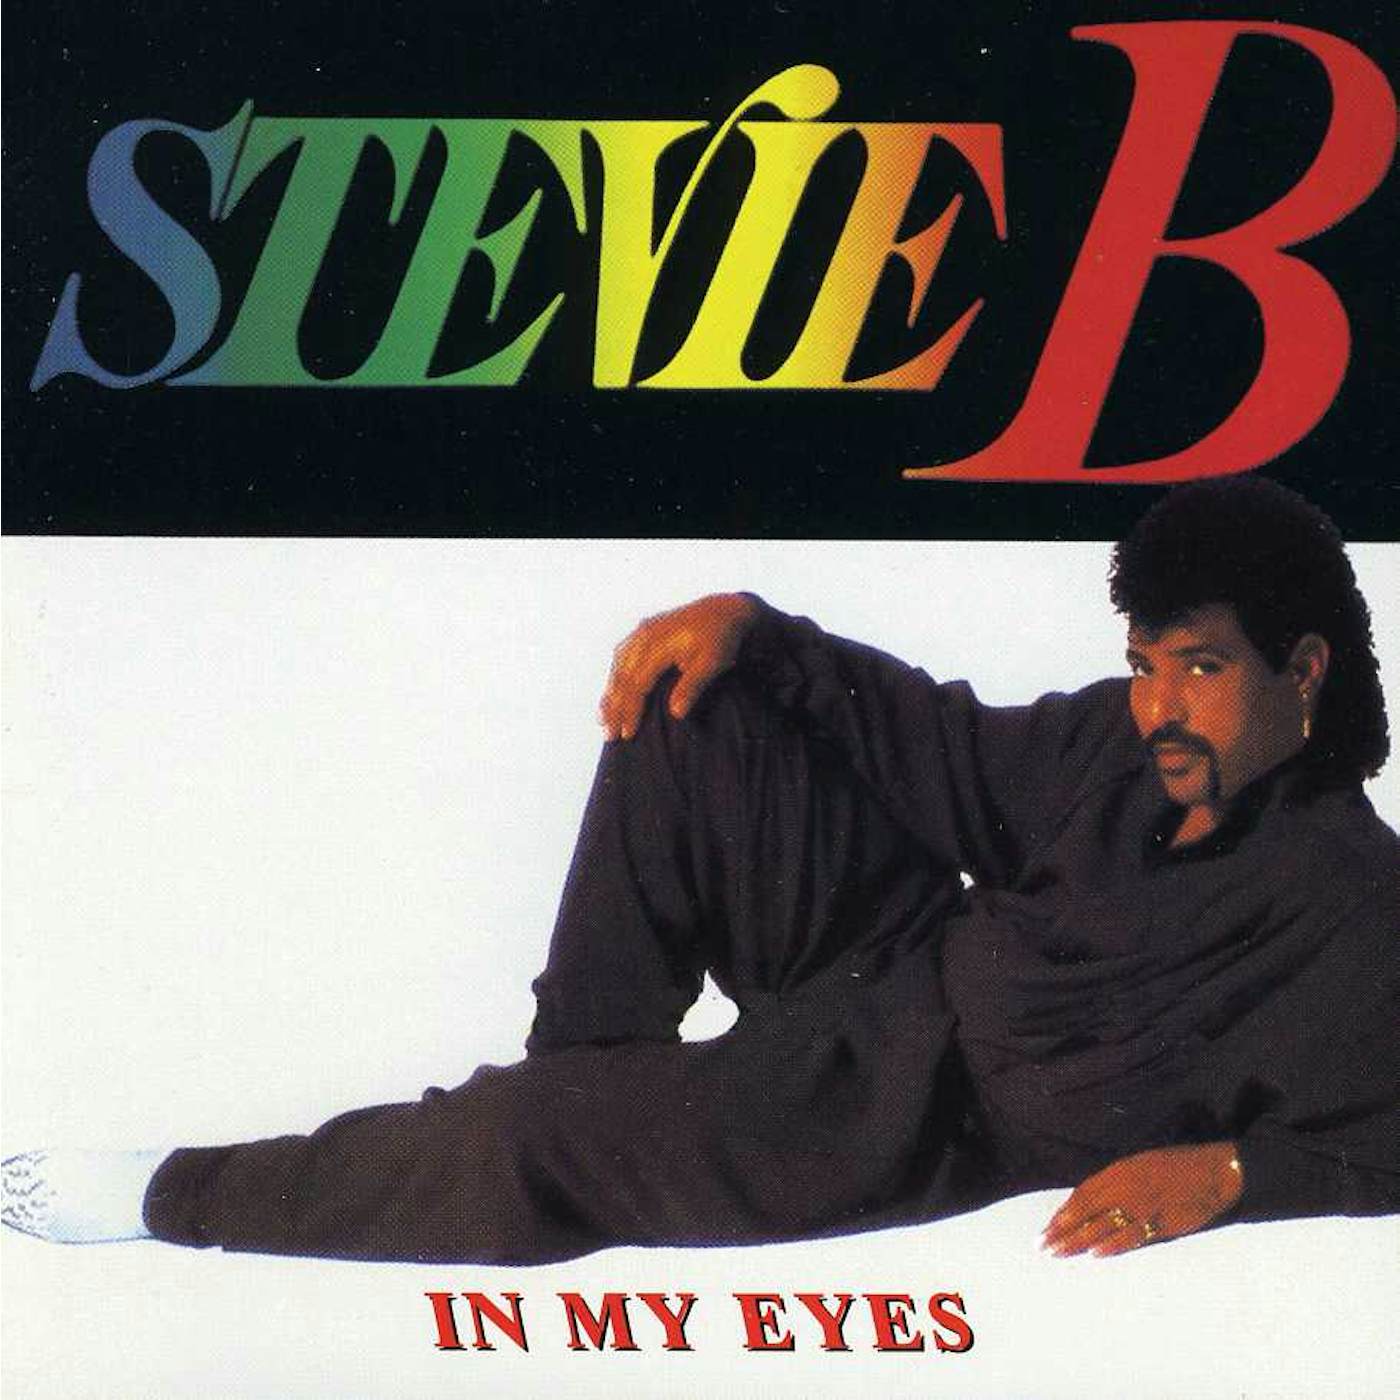 Stevie B IN MY EYES CD